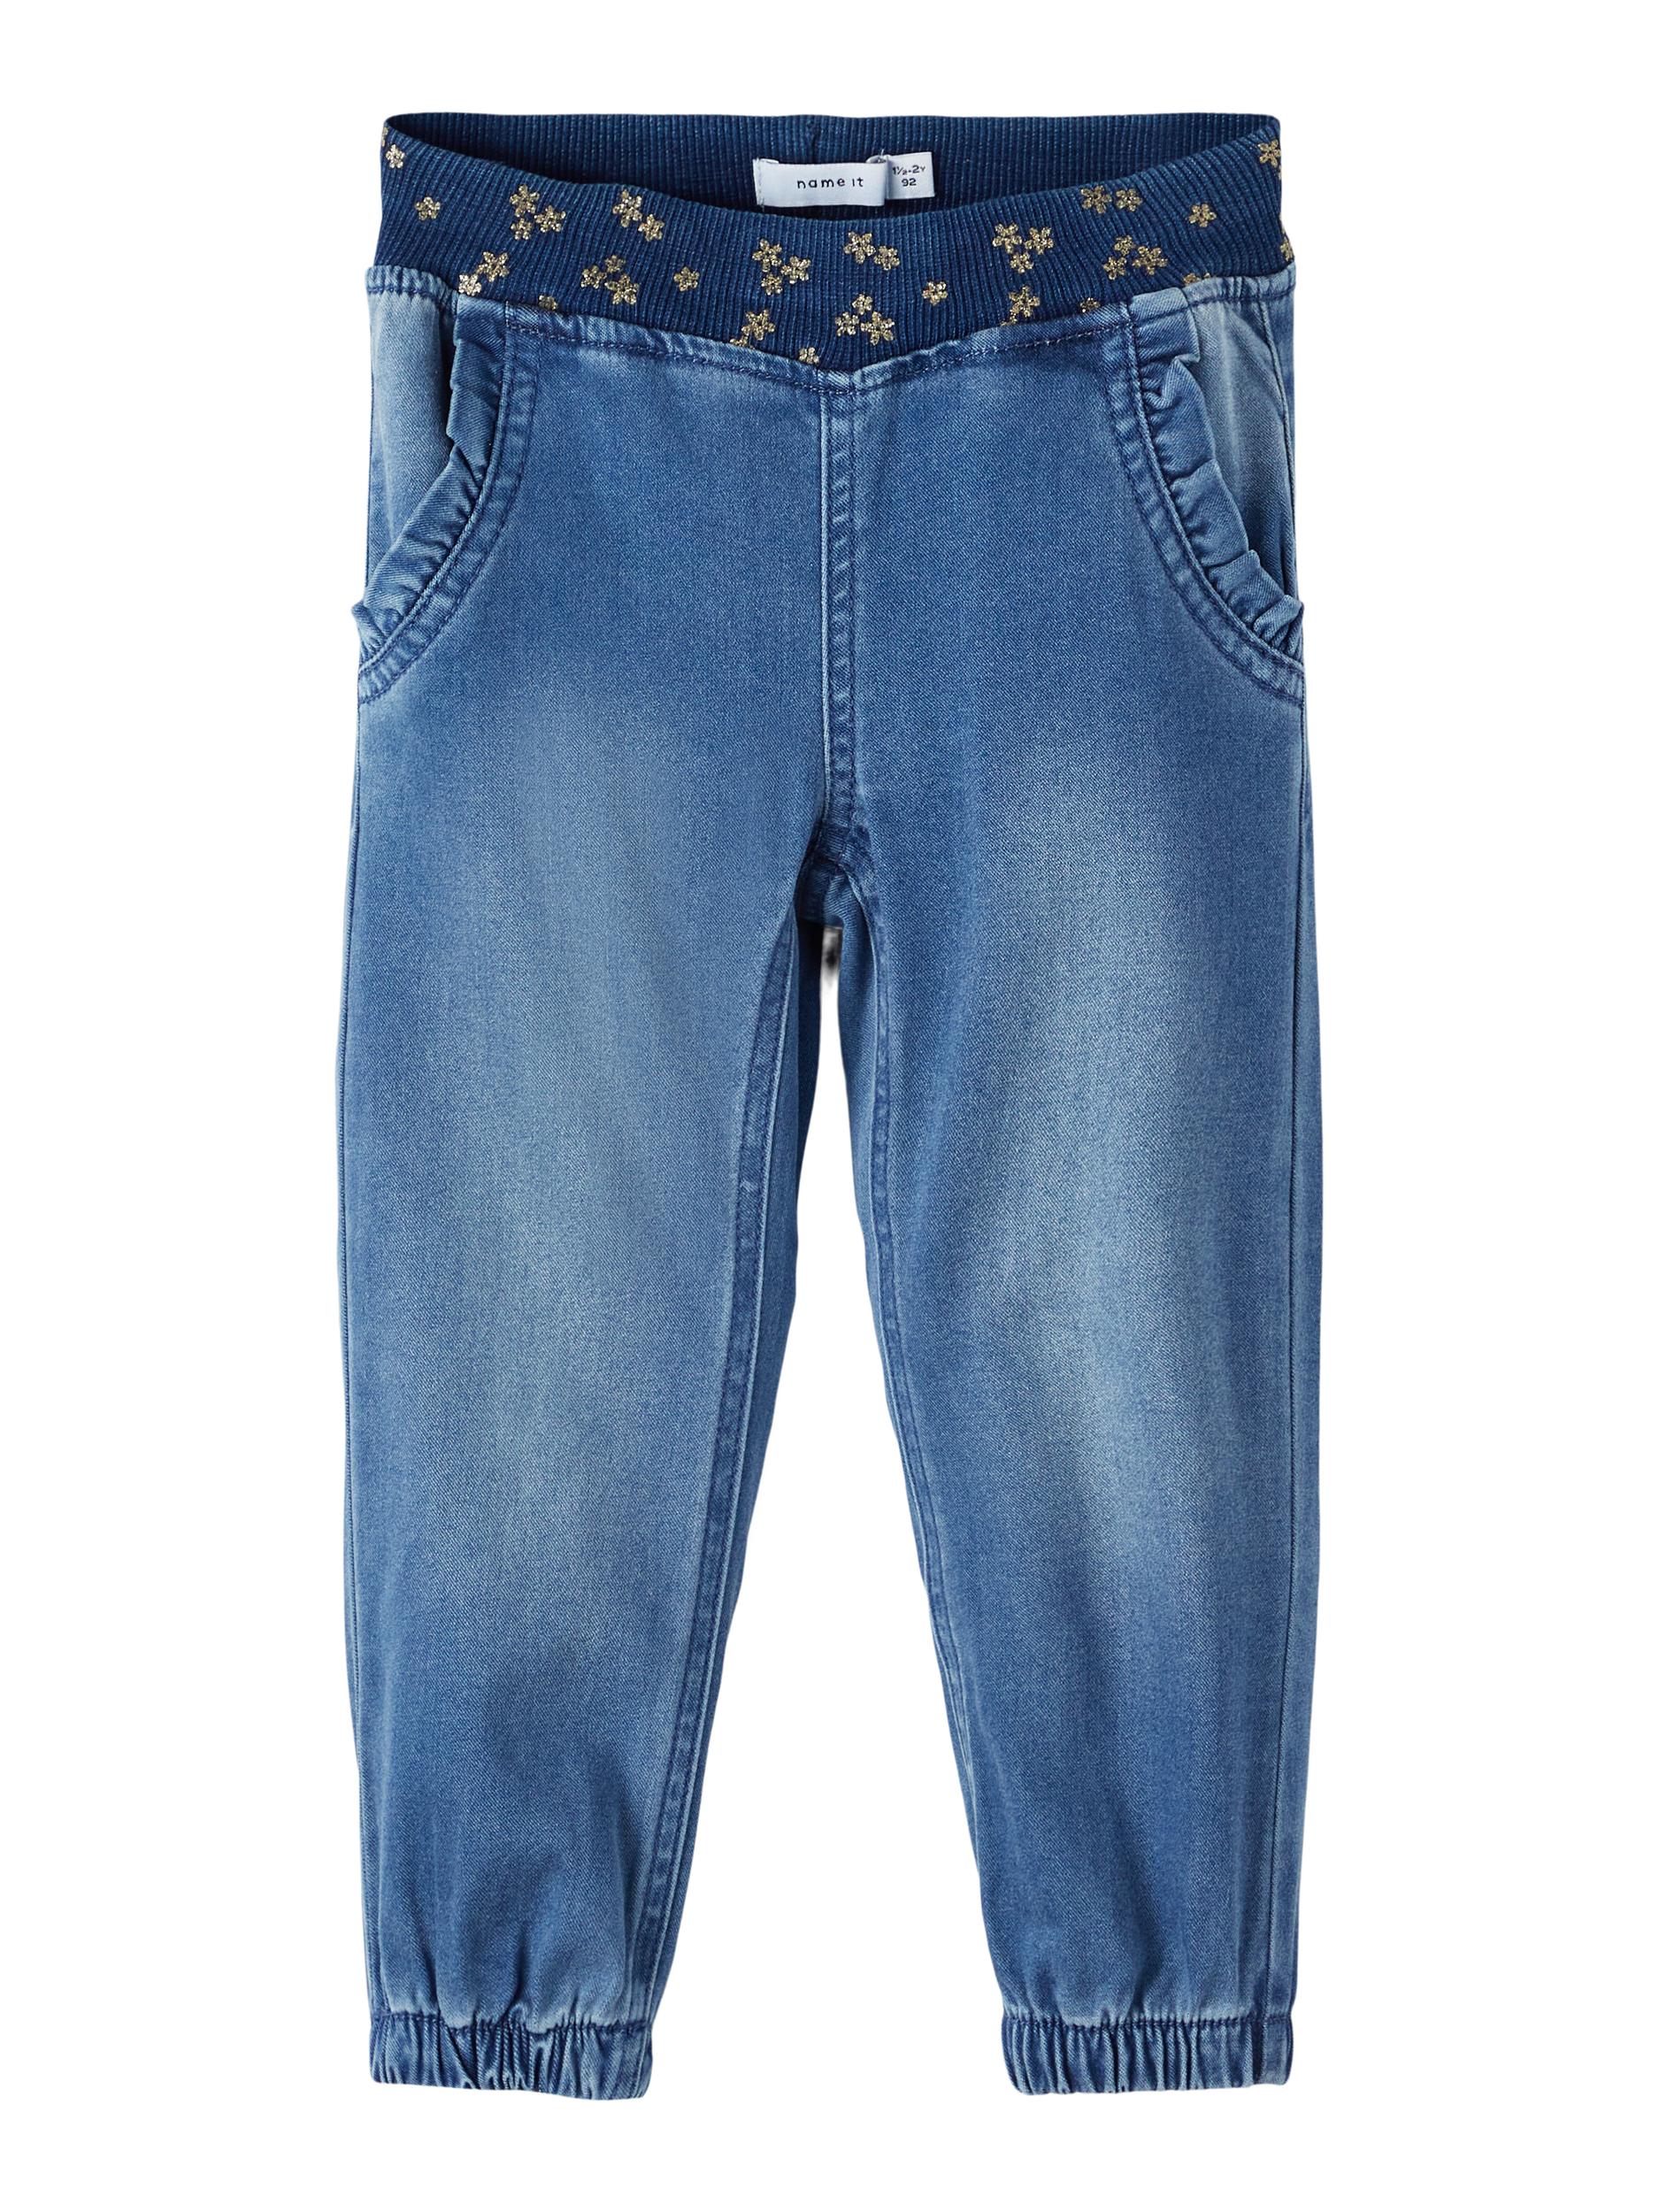  Bibi Bukser, Medium Blue Denim, 110 cm